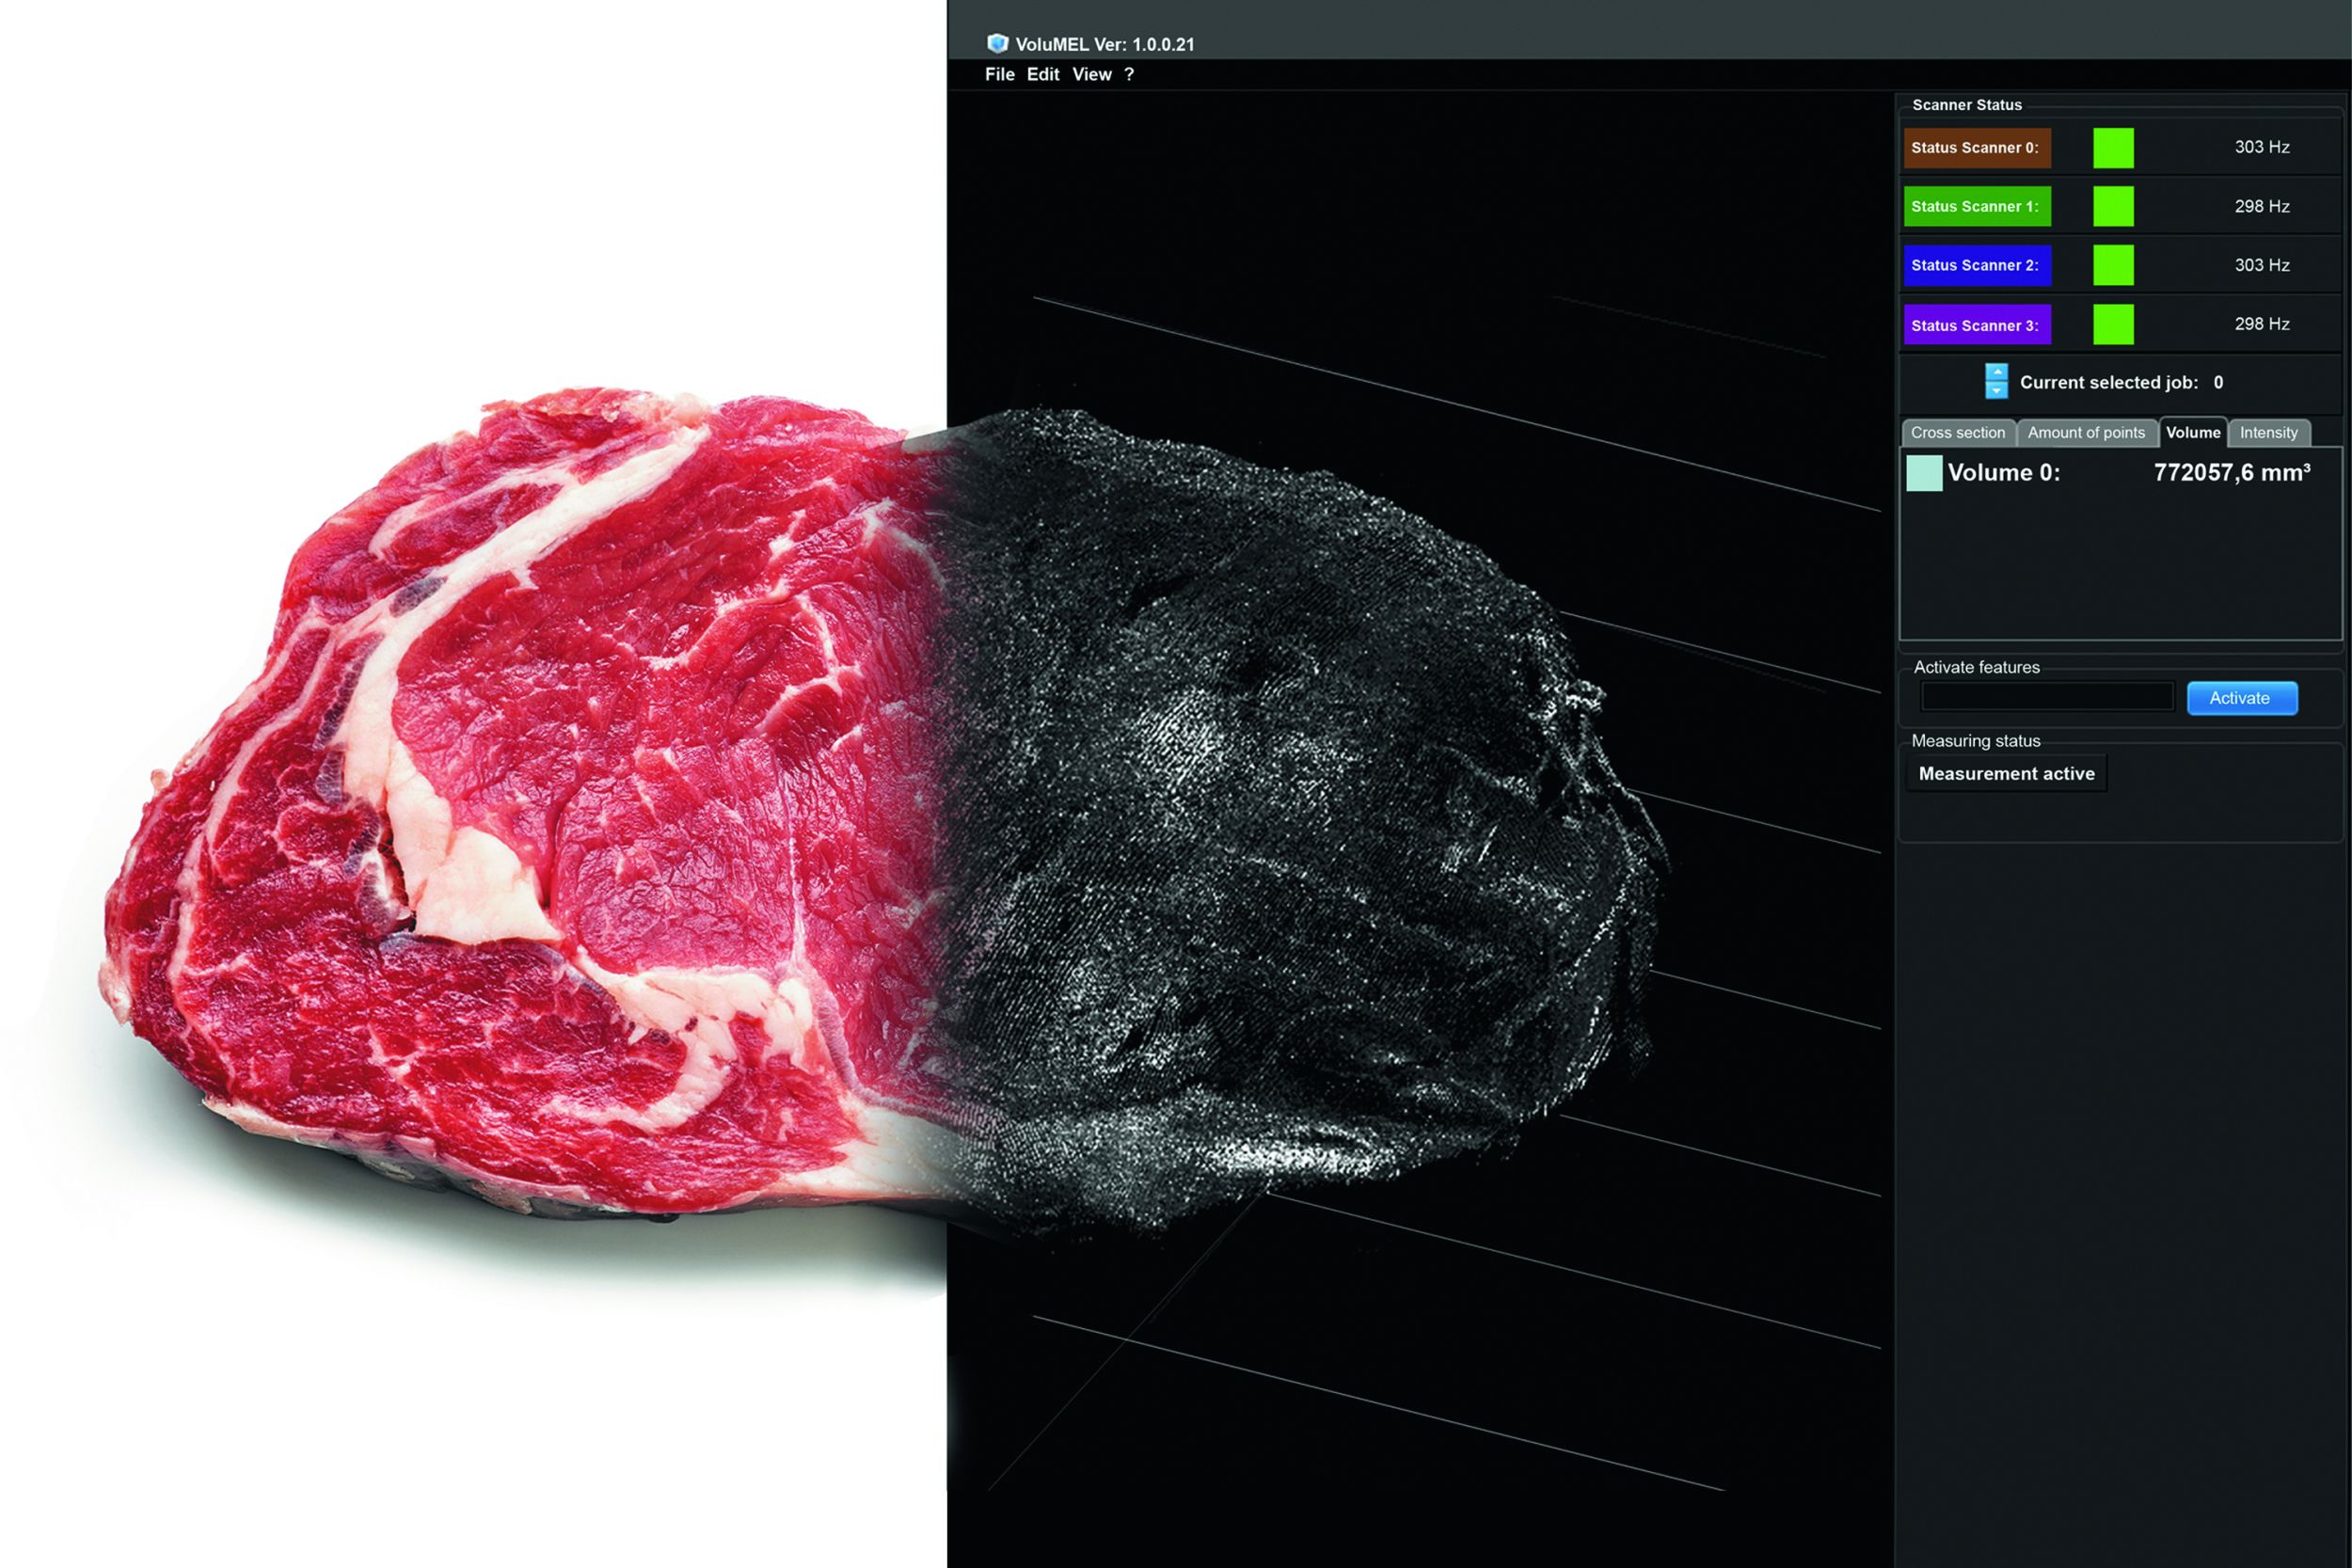 Objekte wie Fleisch, Fisch, Obst oder Gemse lassen sich mit der 3D-Technologie vermessen und per 3D-Punktewolke mikrometergenau virtuell abbilden, um beispielsweise dessen Volumen genau zu berechnen. (Bild: Wenglor Sensoric GmbH)